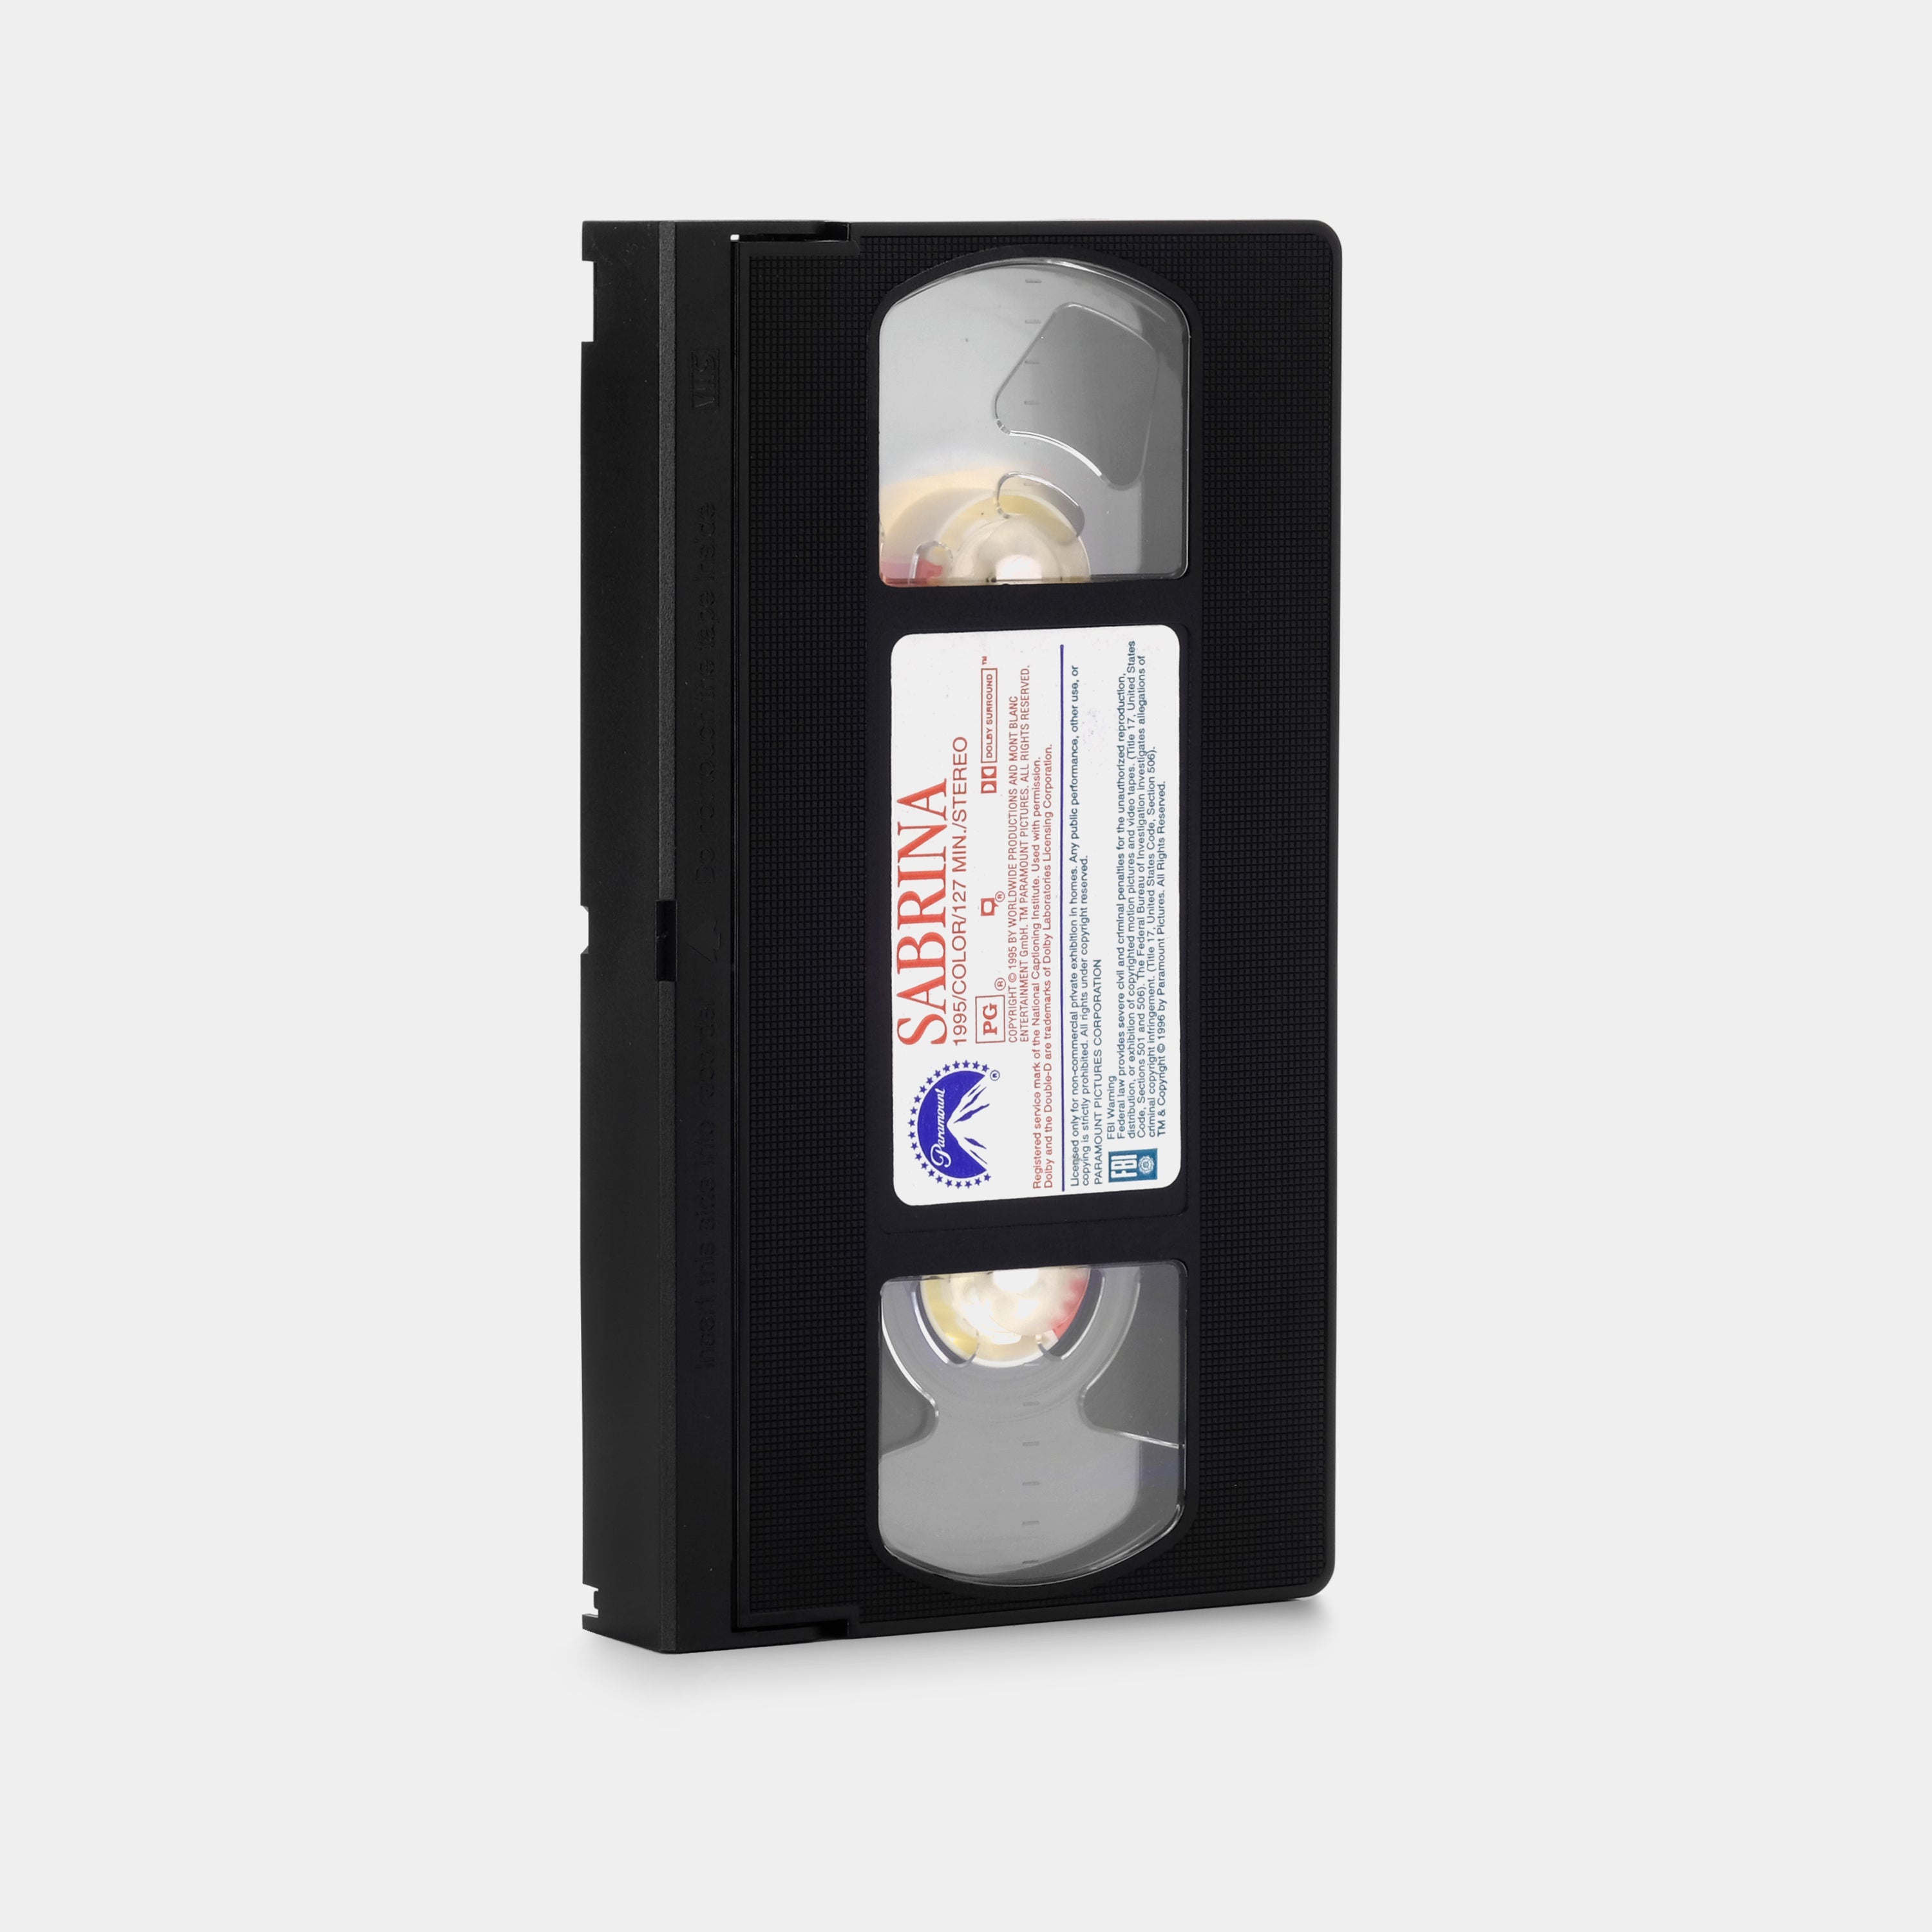 Sabrina VHS Tape